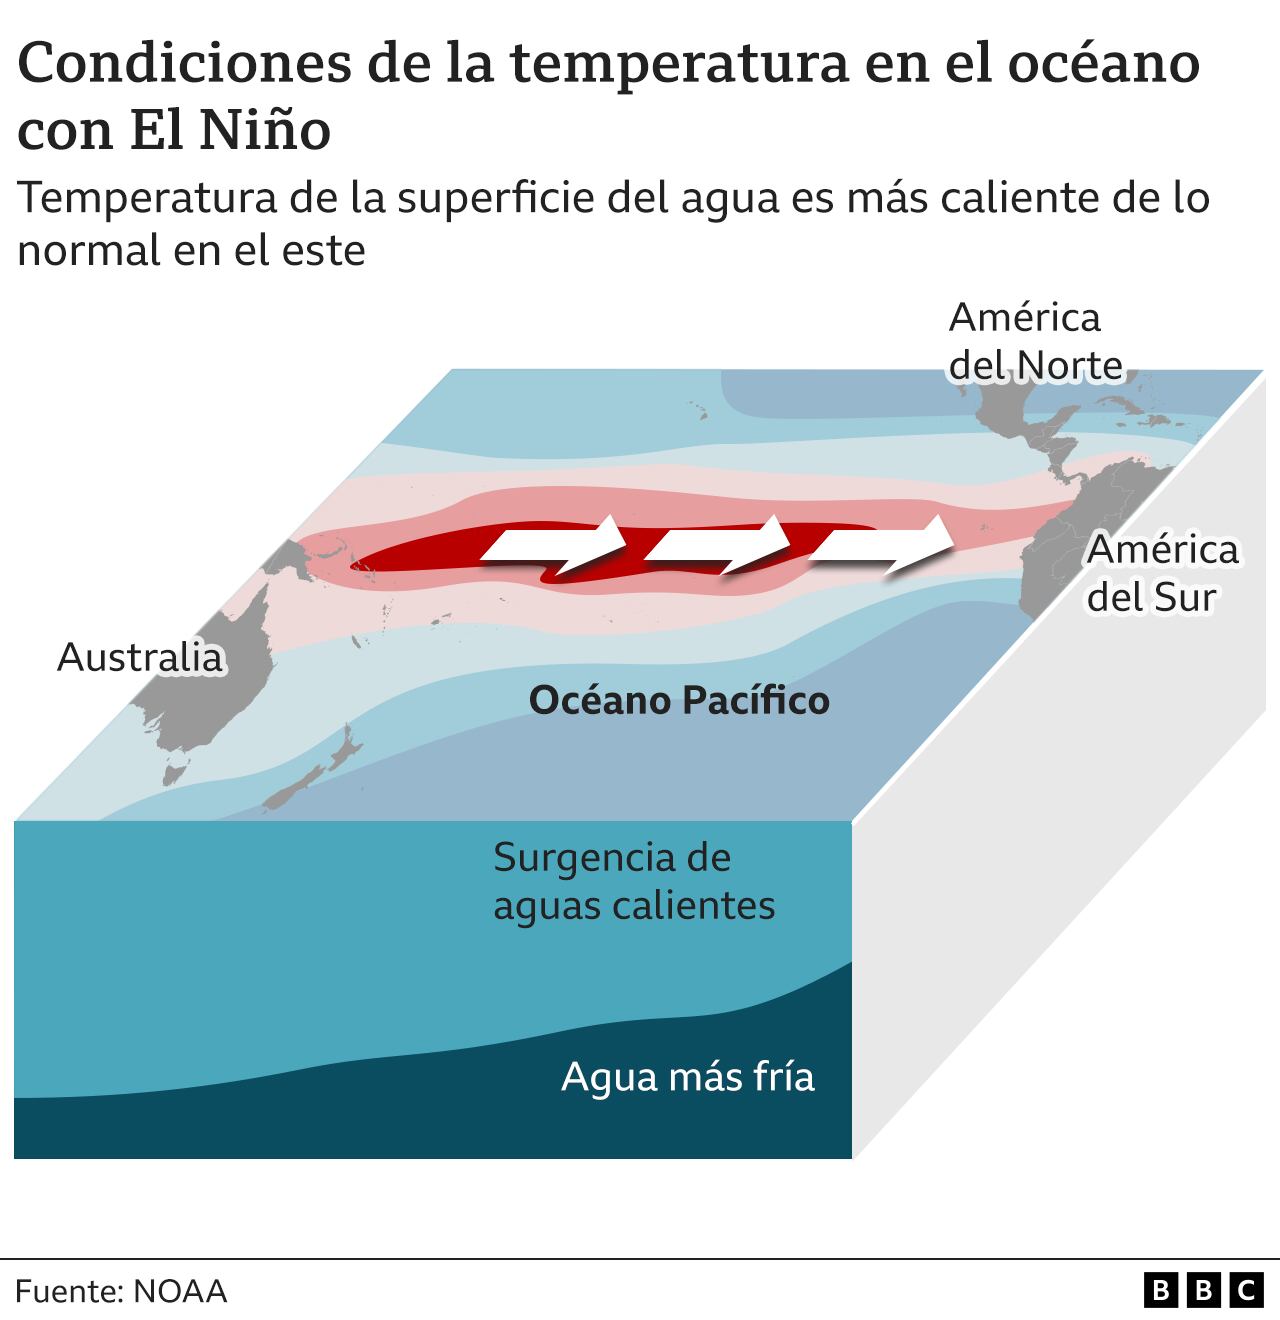 Graph showing temperature conditions in the ocean when El Niño occurs